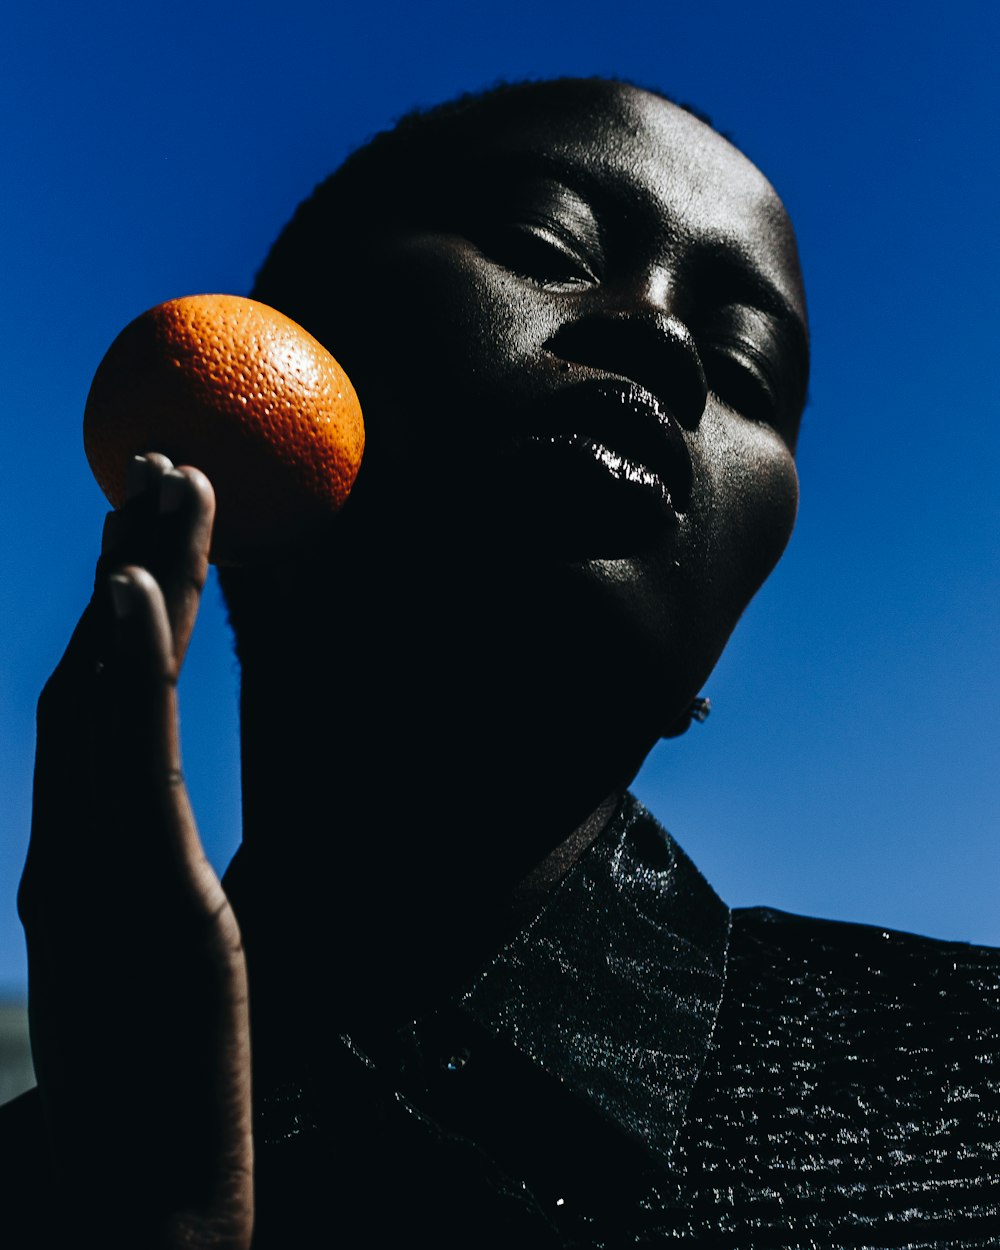 woman holding orange fruit during daytime